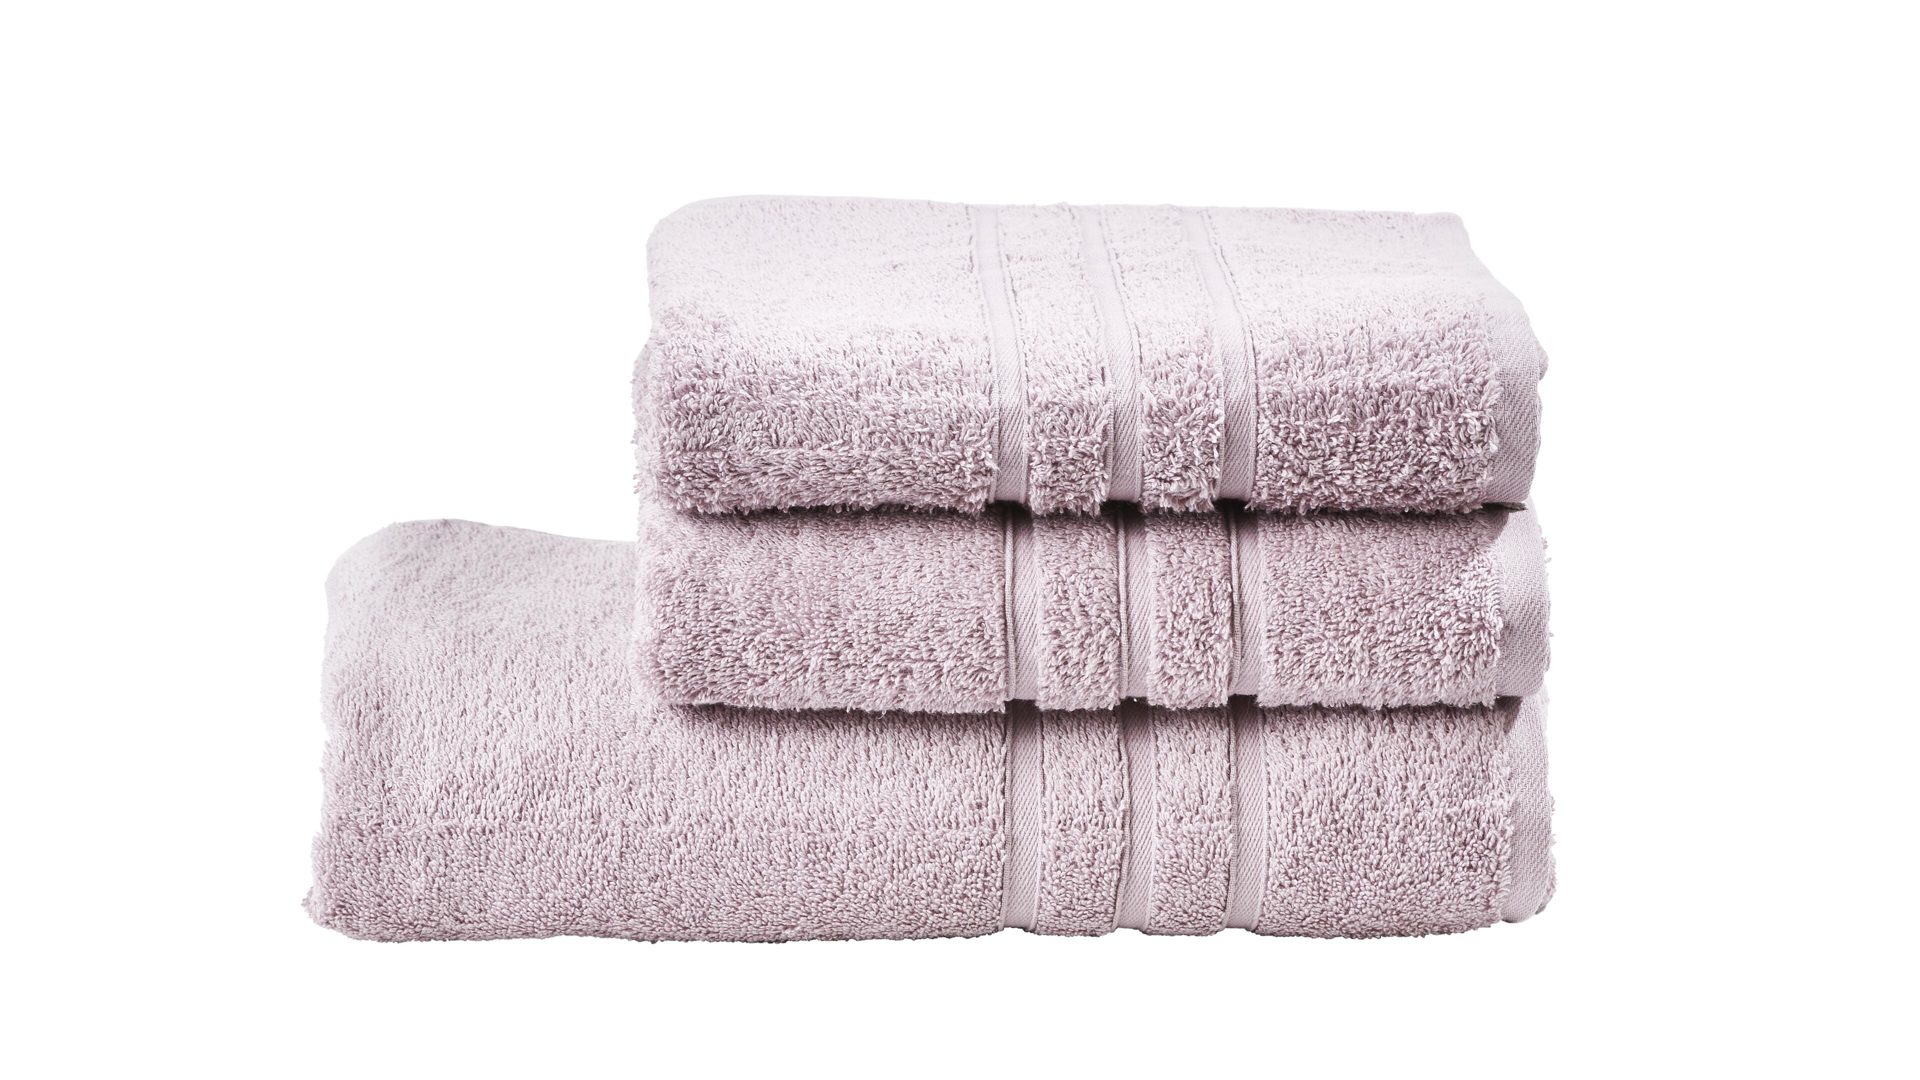 Handtuch-Set Done by karabel home company aus Stoff in Pastellfarben Done Handtuch-Set Daily Uni altrosafarbene Baumwolle – dreiteilig